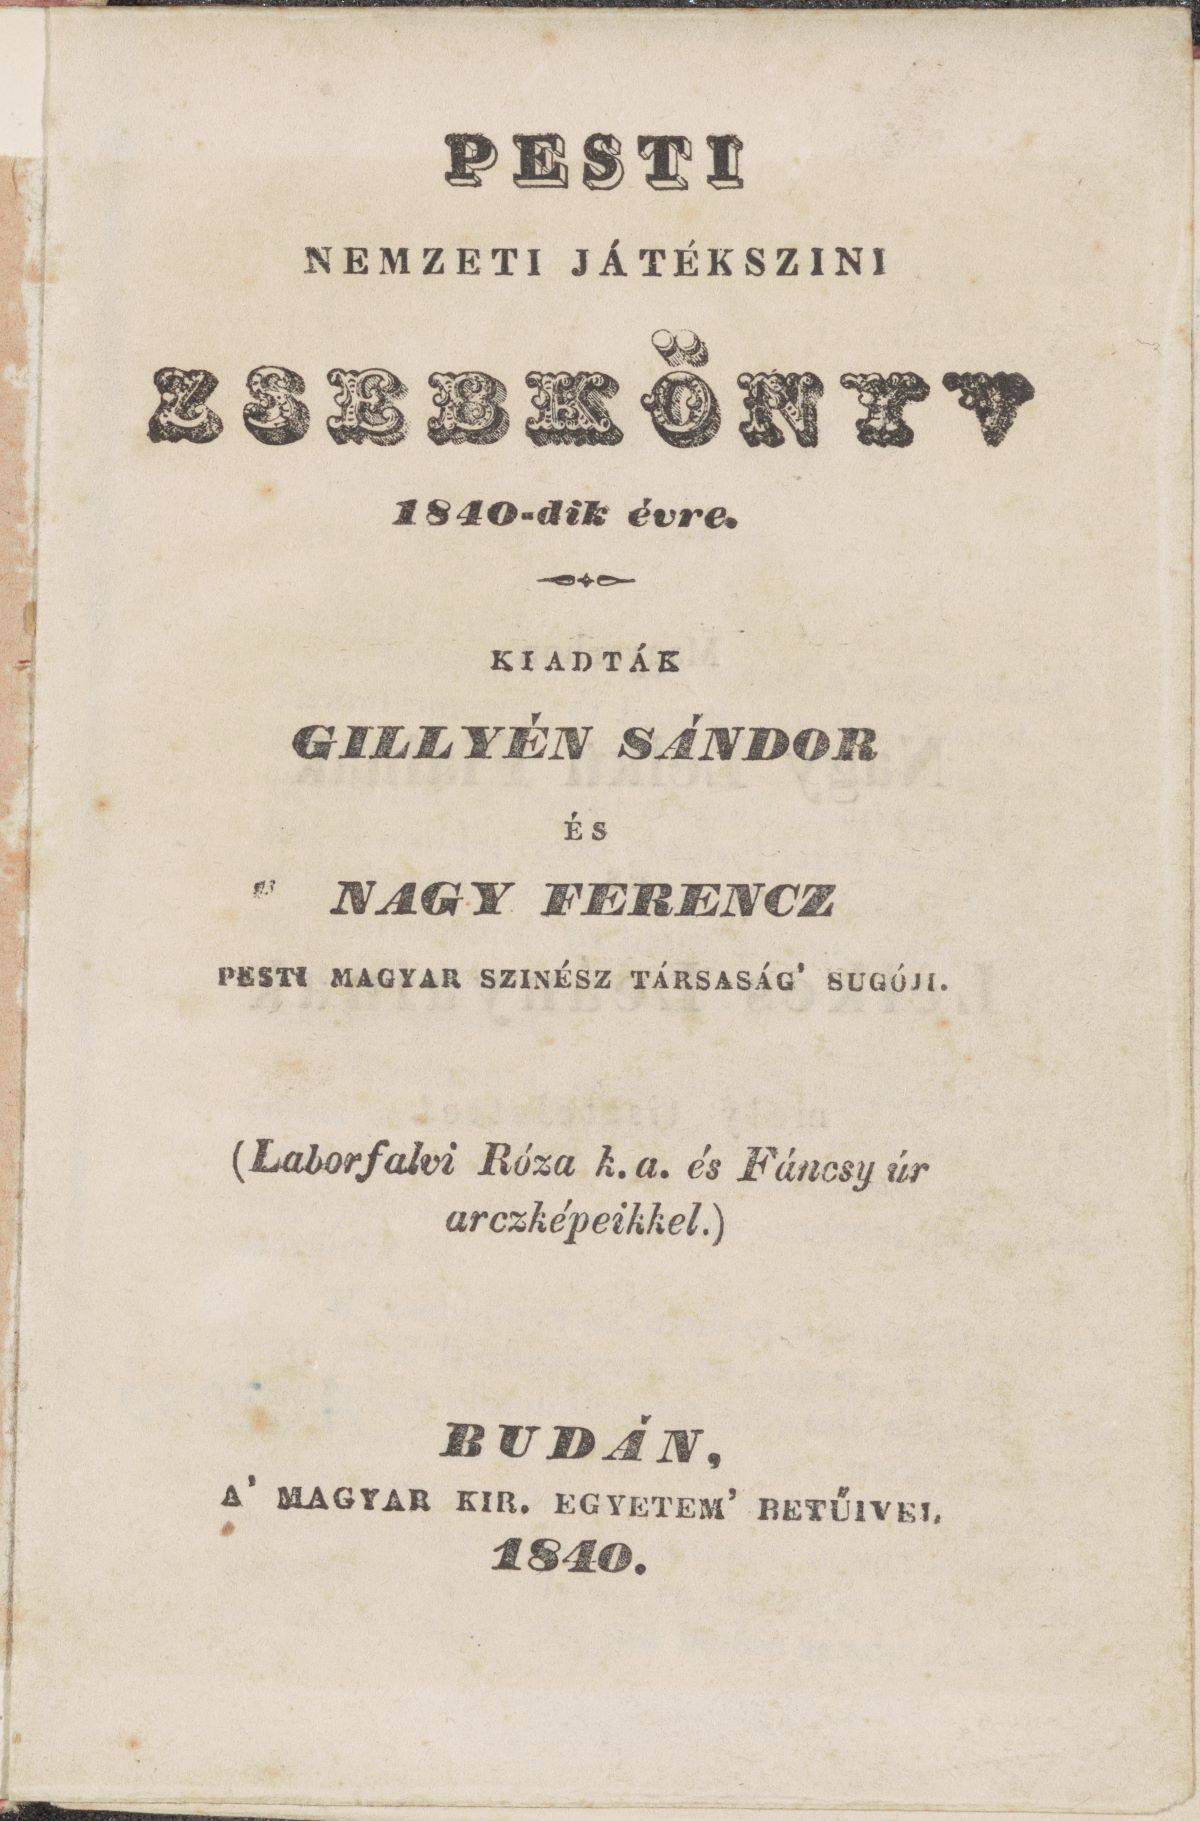 Pesti nemzeti játékszíni zsebkönyv 1840-dik évre, kiad.: Gillyén Sándor, Nagy Ferenc (PIM Könyvtár)